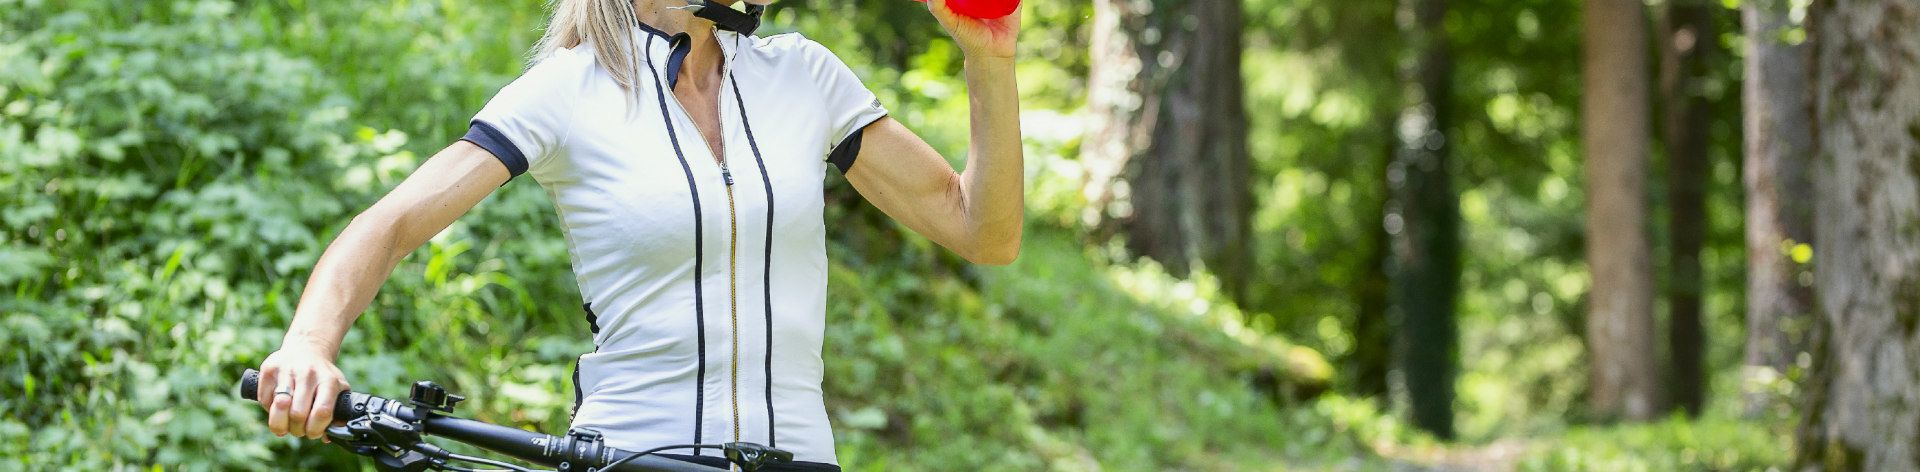 online cycling shirts women